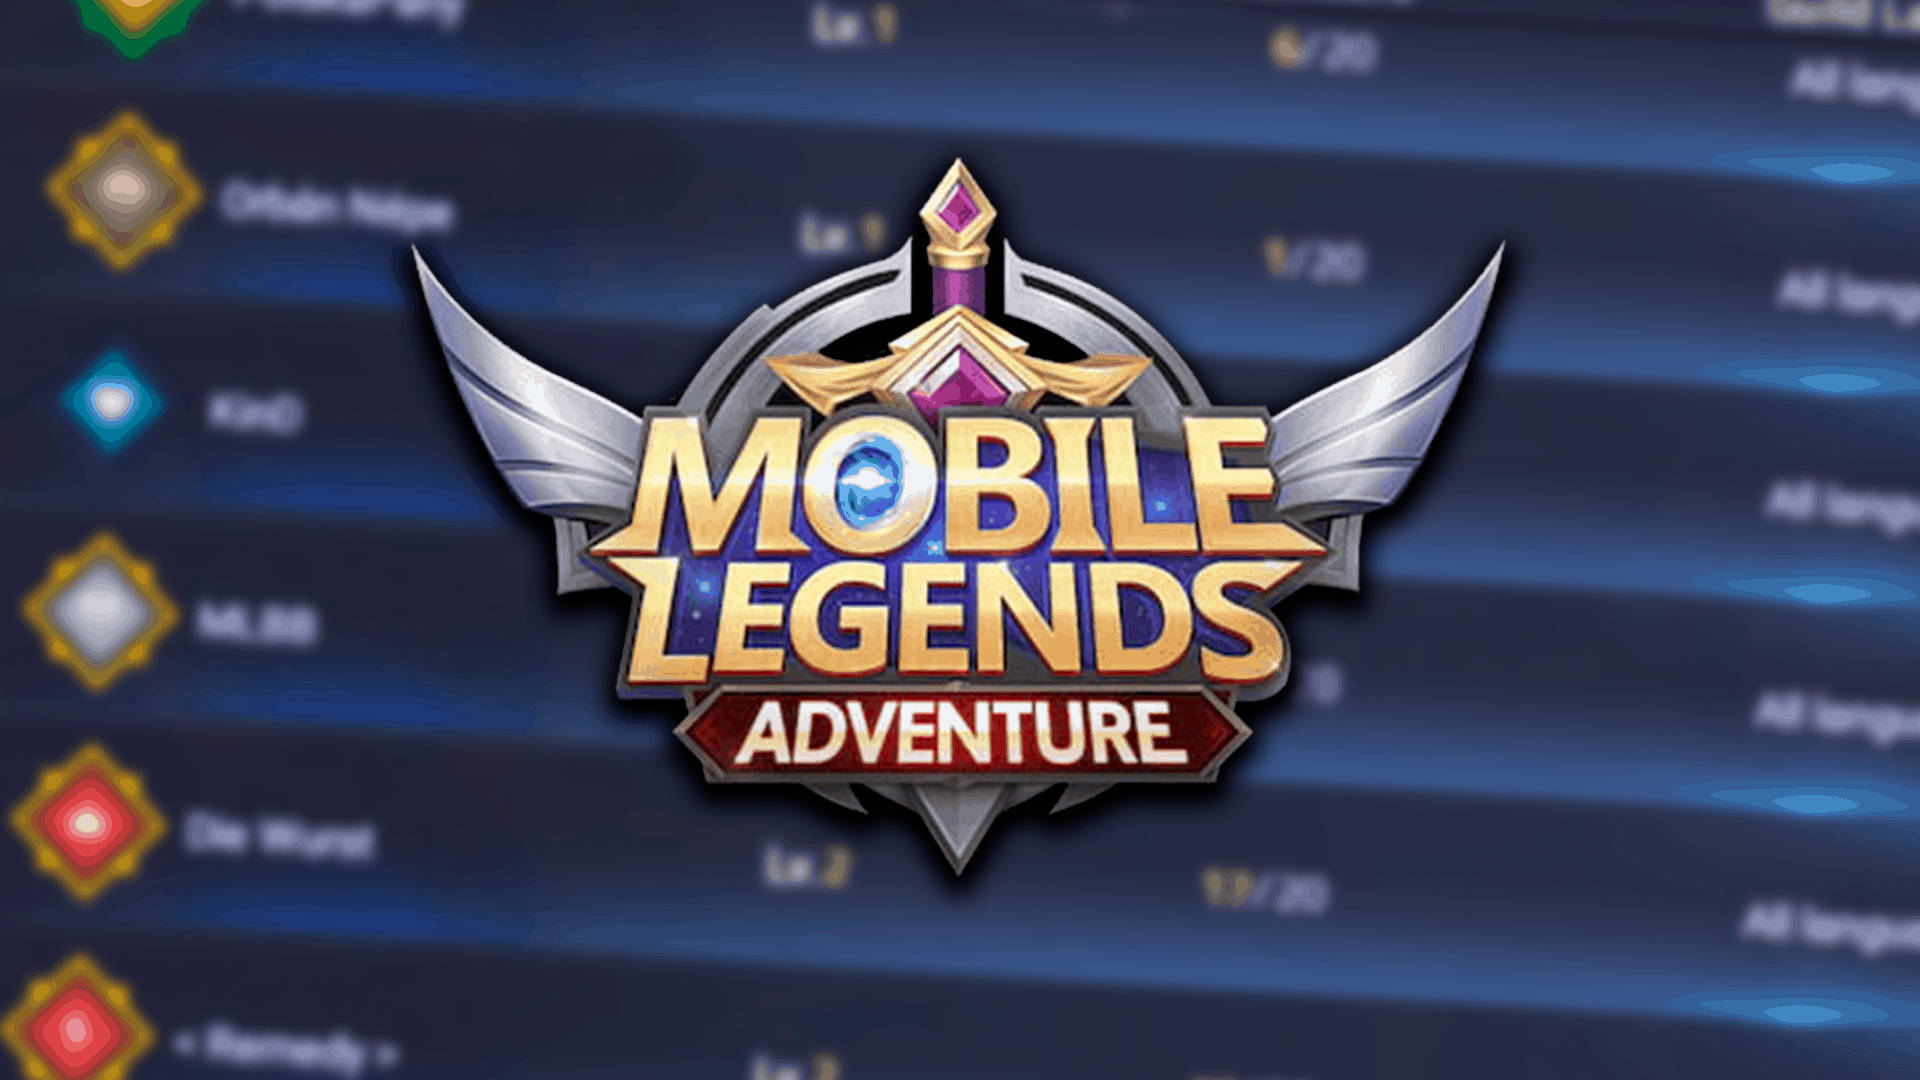 Mobile Legends Adventure Logo Background